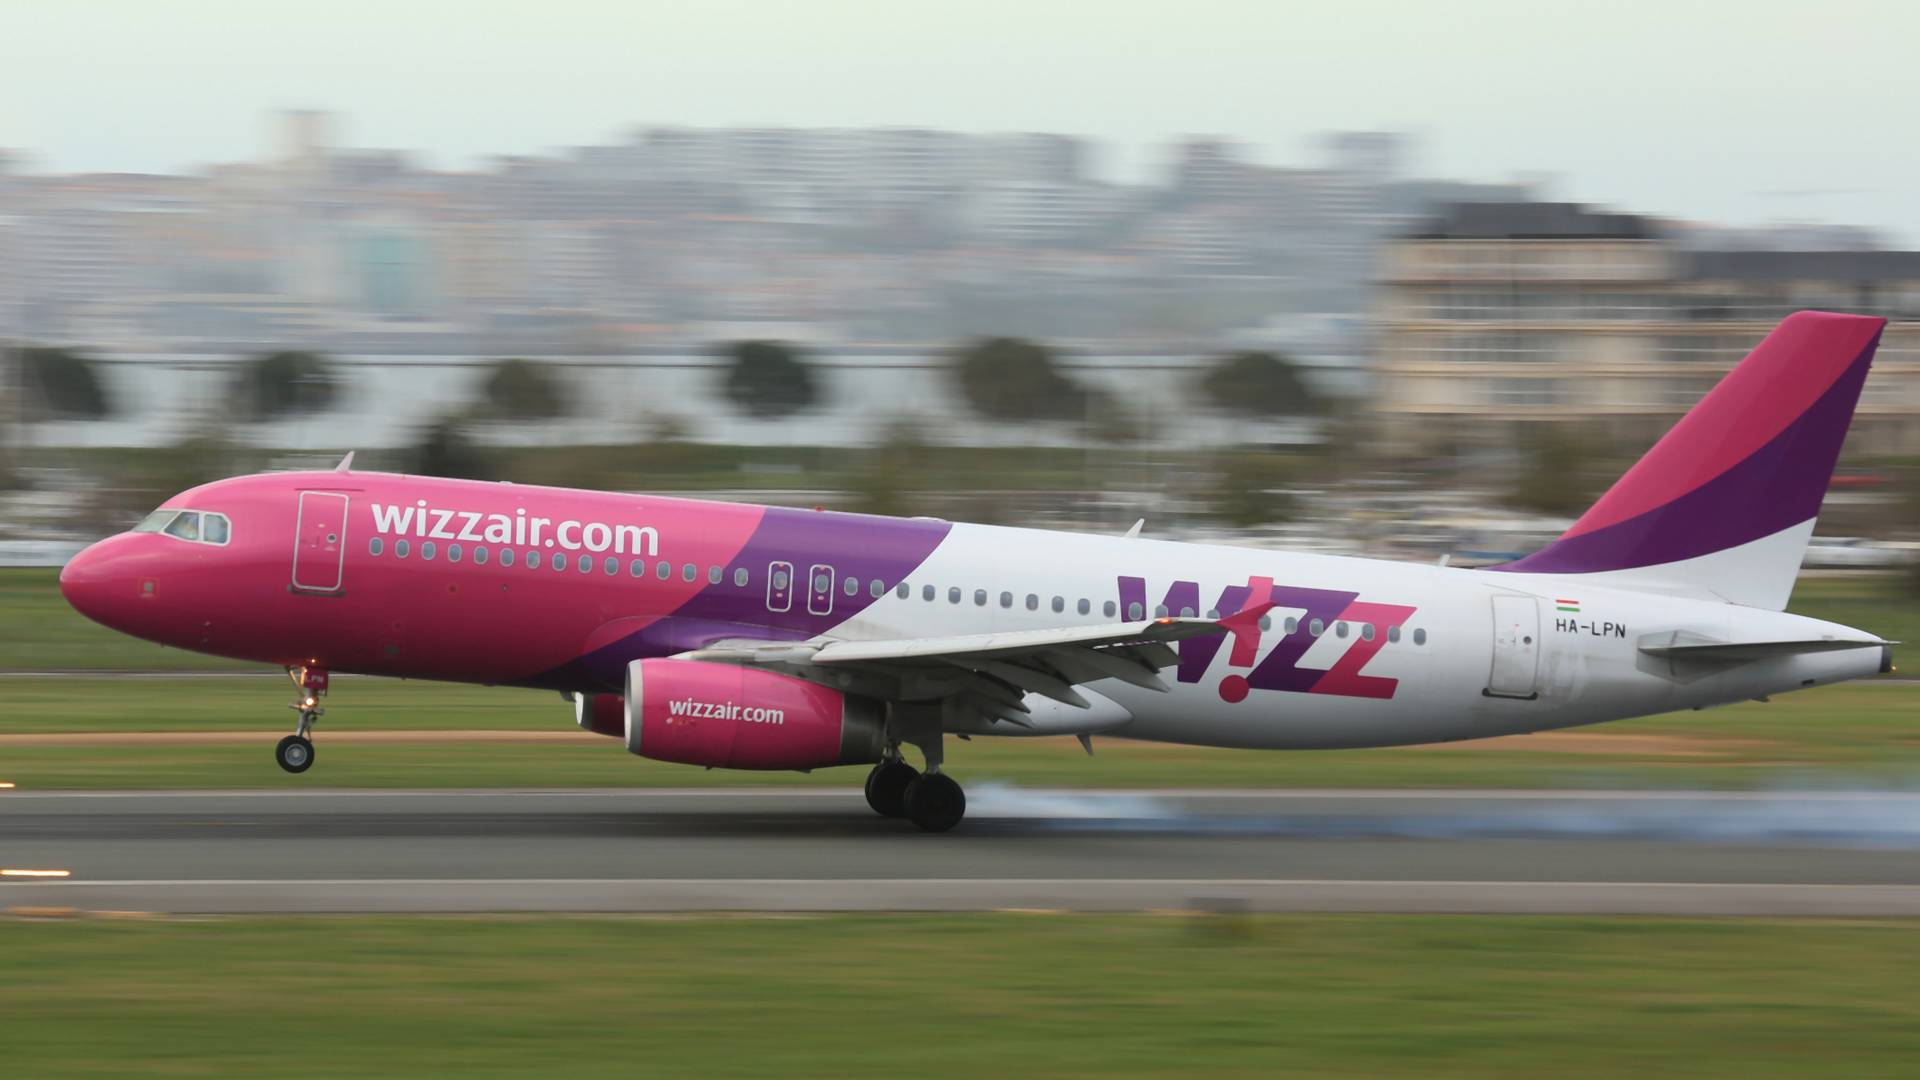 Kínos: az USA nem engedélyezi a WizzAir amerikai járatait, többféle problémát is találtak